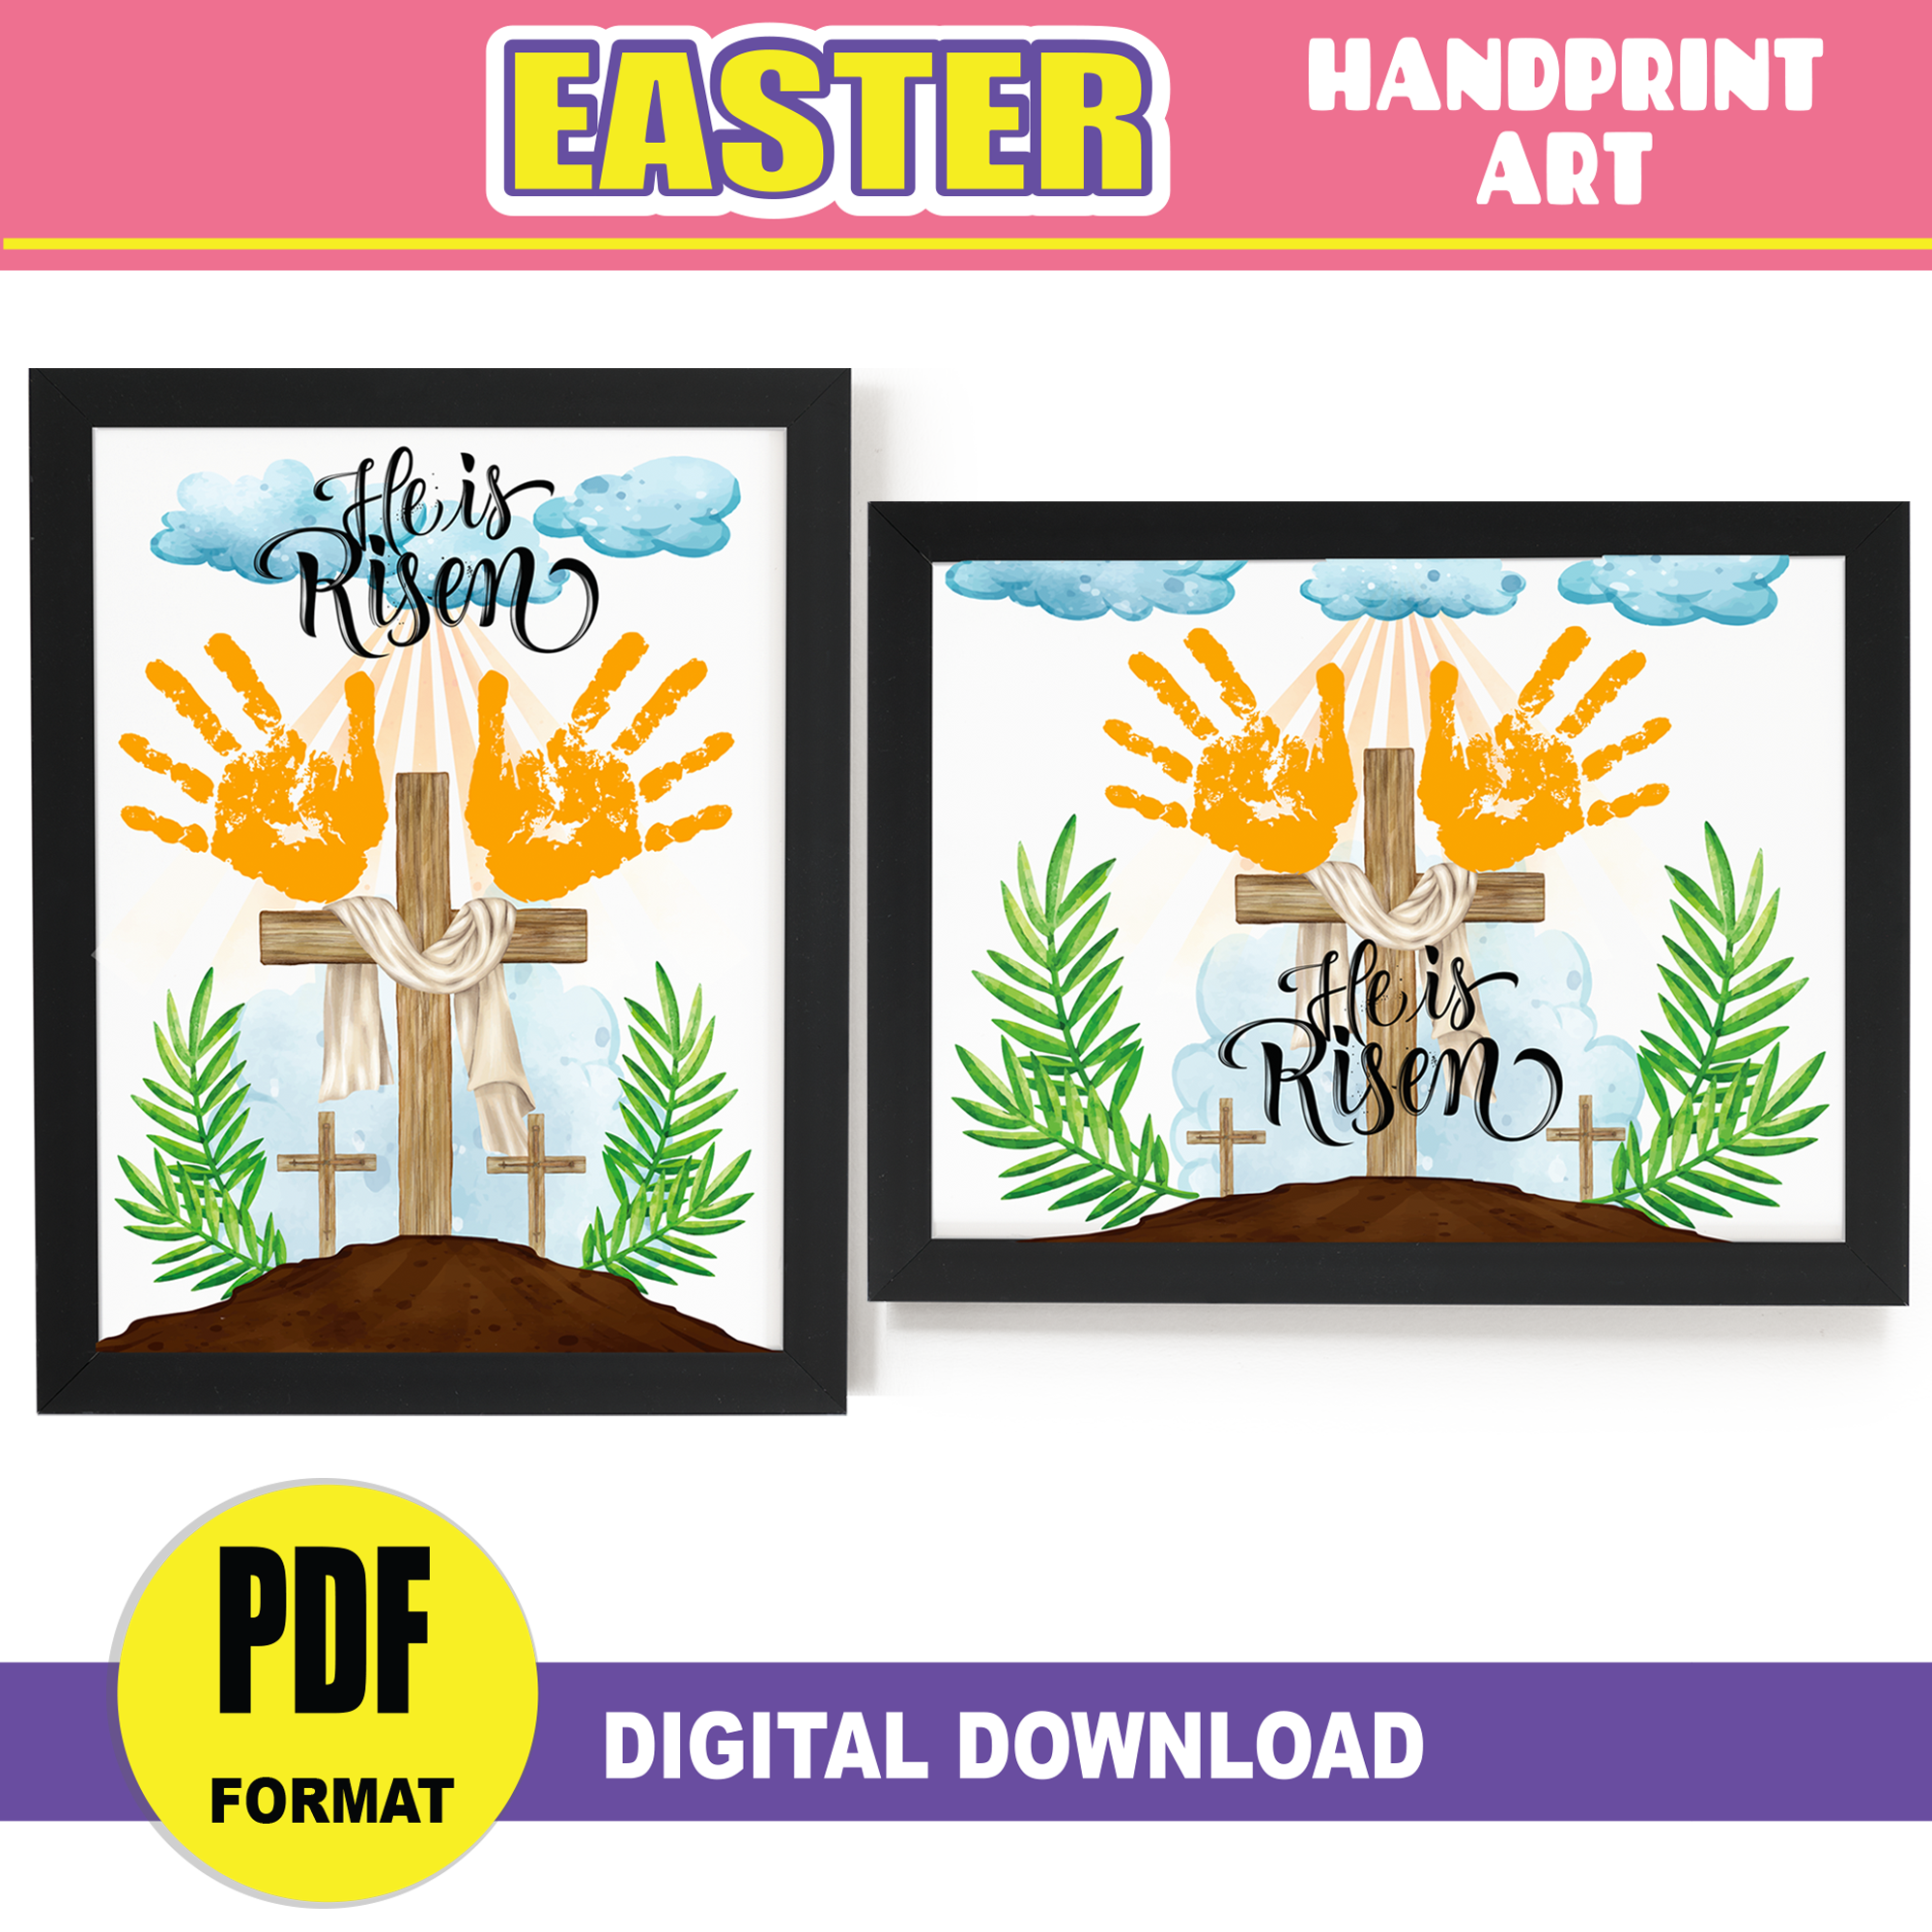 Easter Handprint Art Craft | Cross He Is Risen Religious Handprint PRINTABLE | Sunday School Activity Craft Preschool